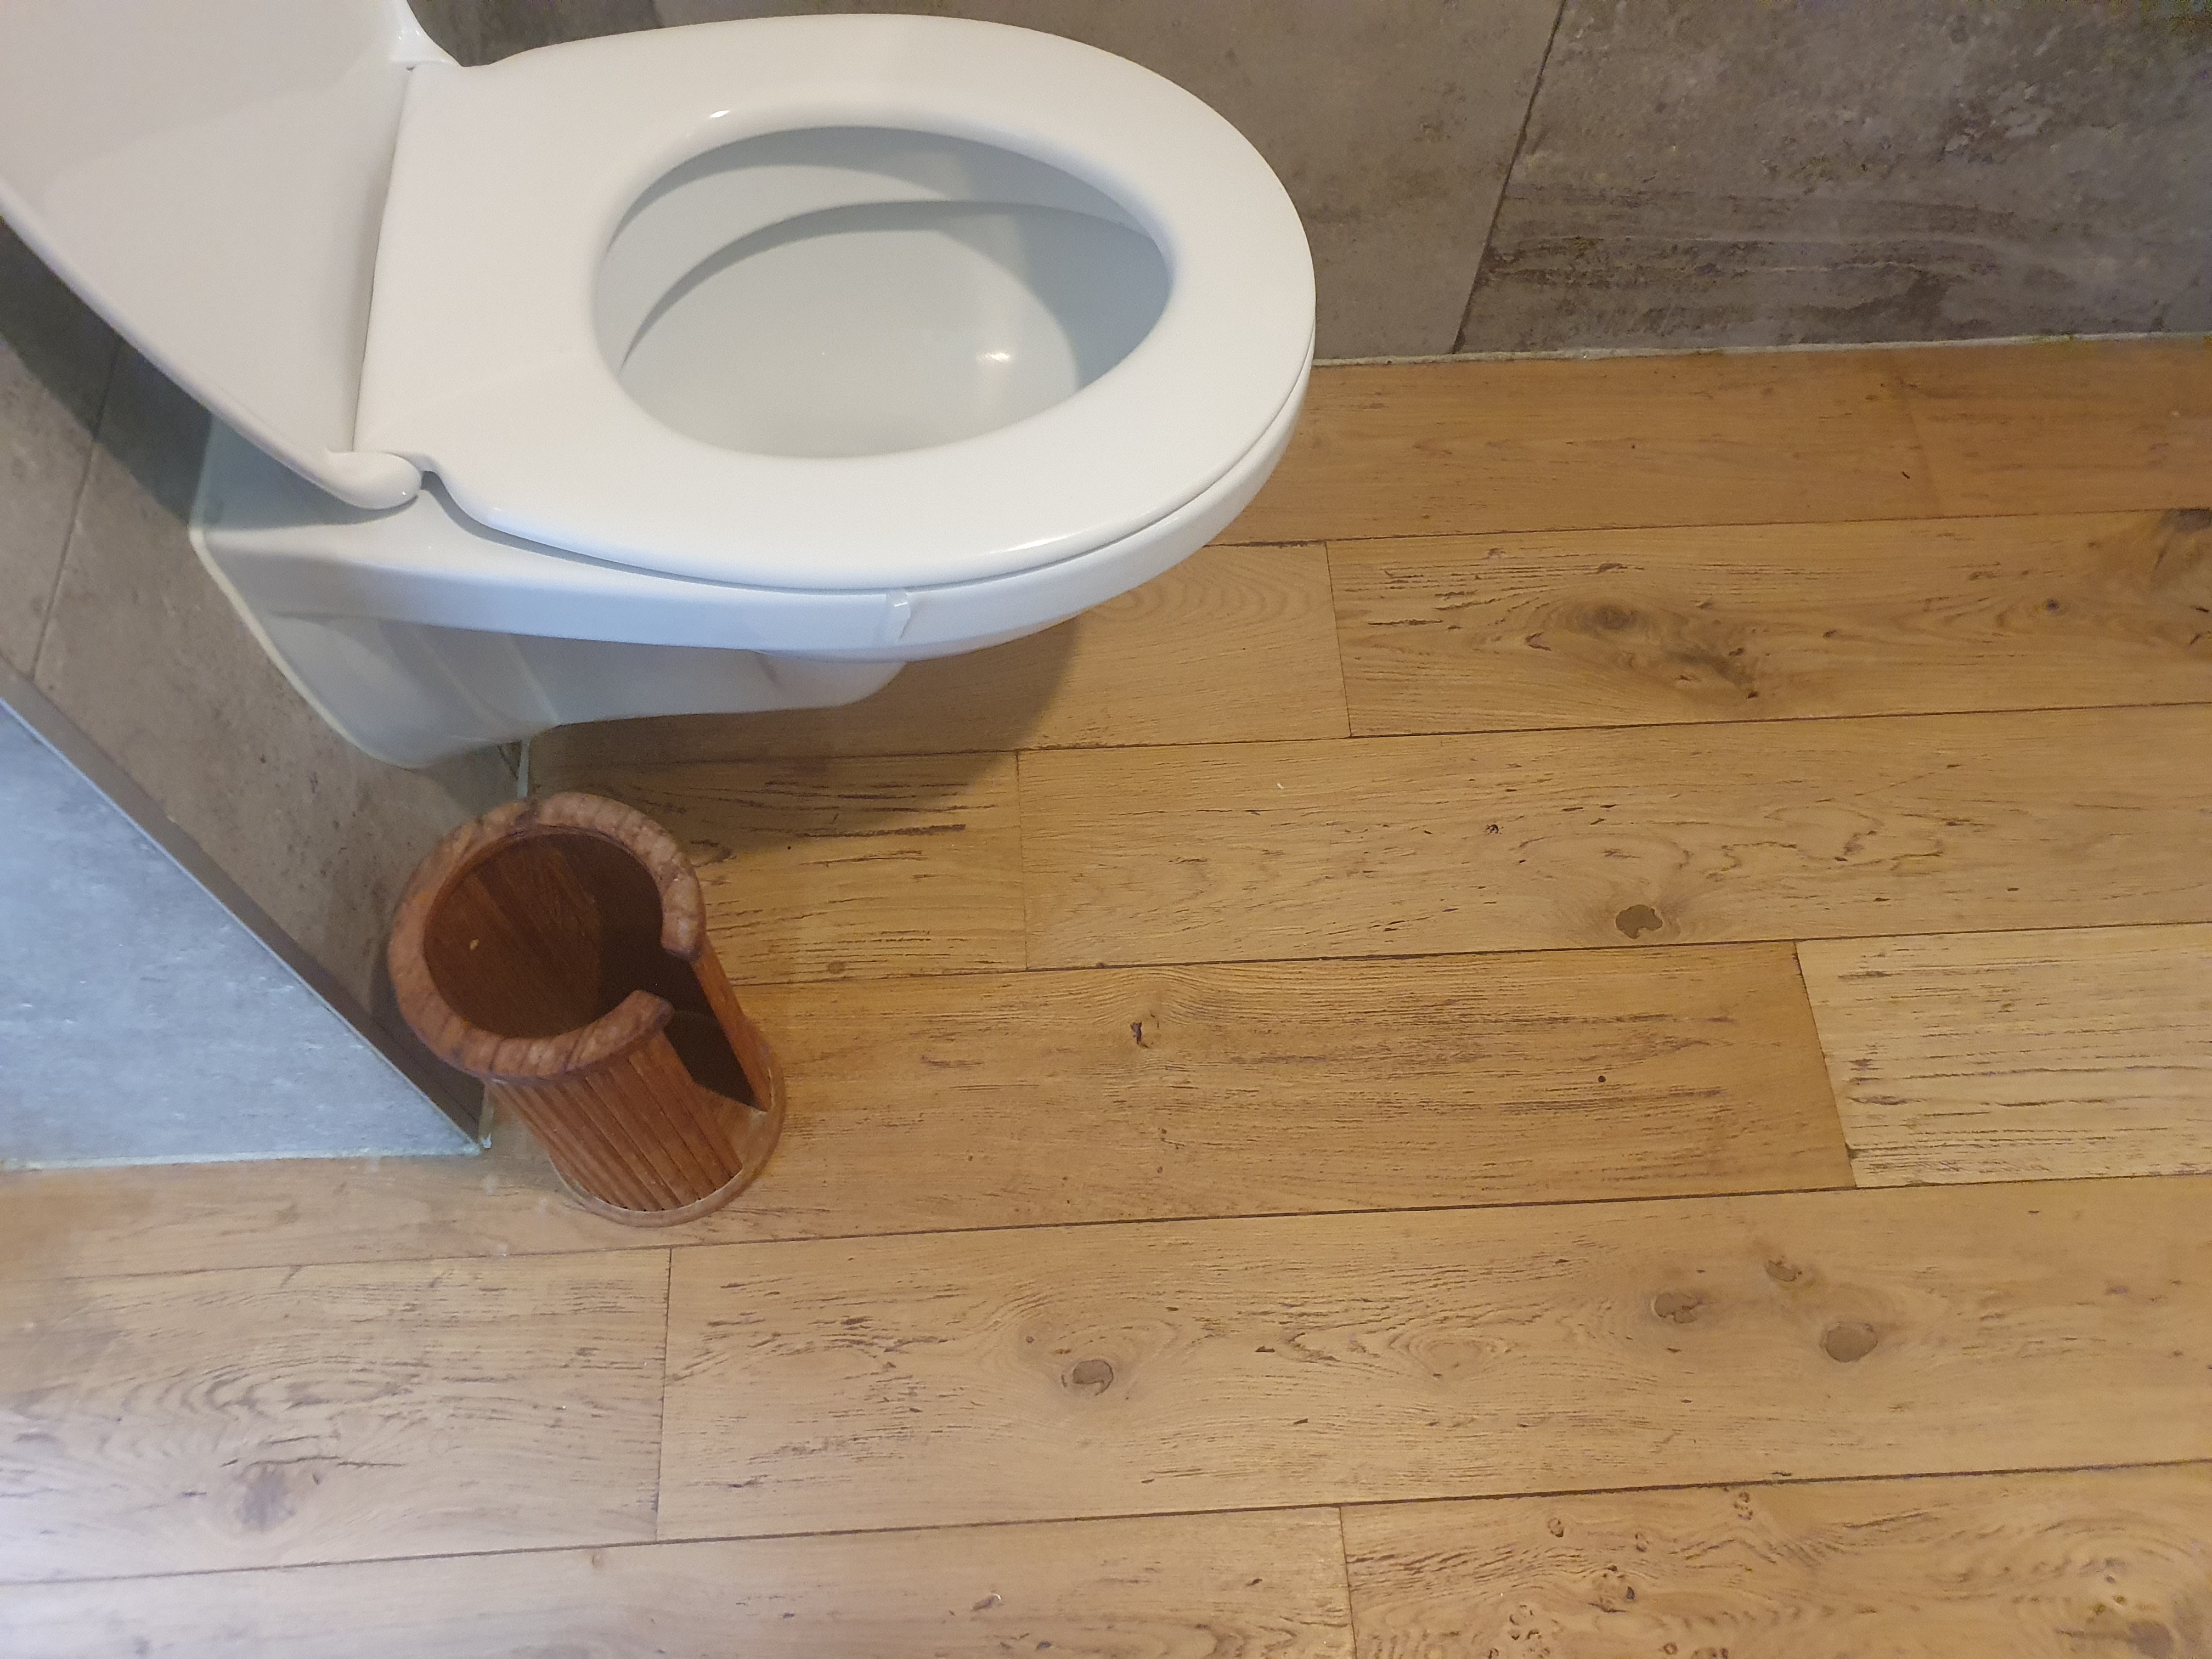 Houten vloer in badkamer, de Vloerderij weet raad, want als je het goed aanpakt is een houten vloer in een badkamer super te doen.